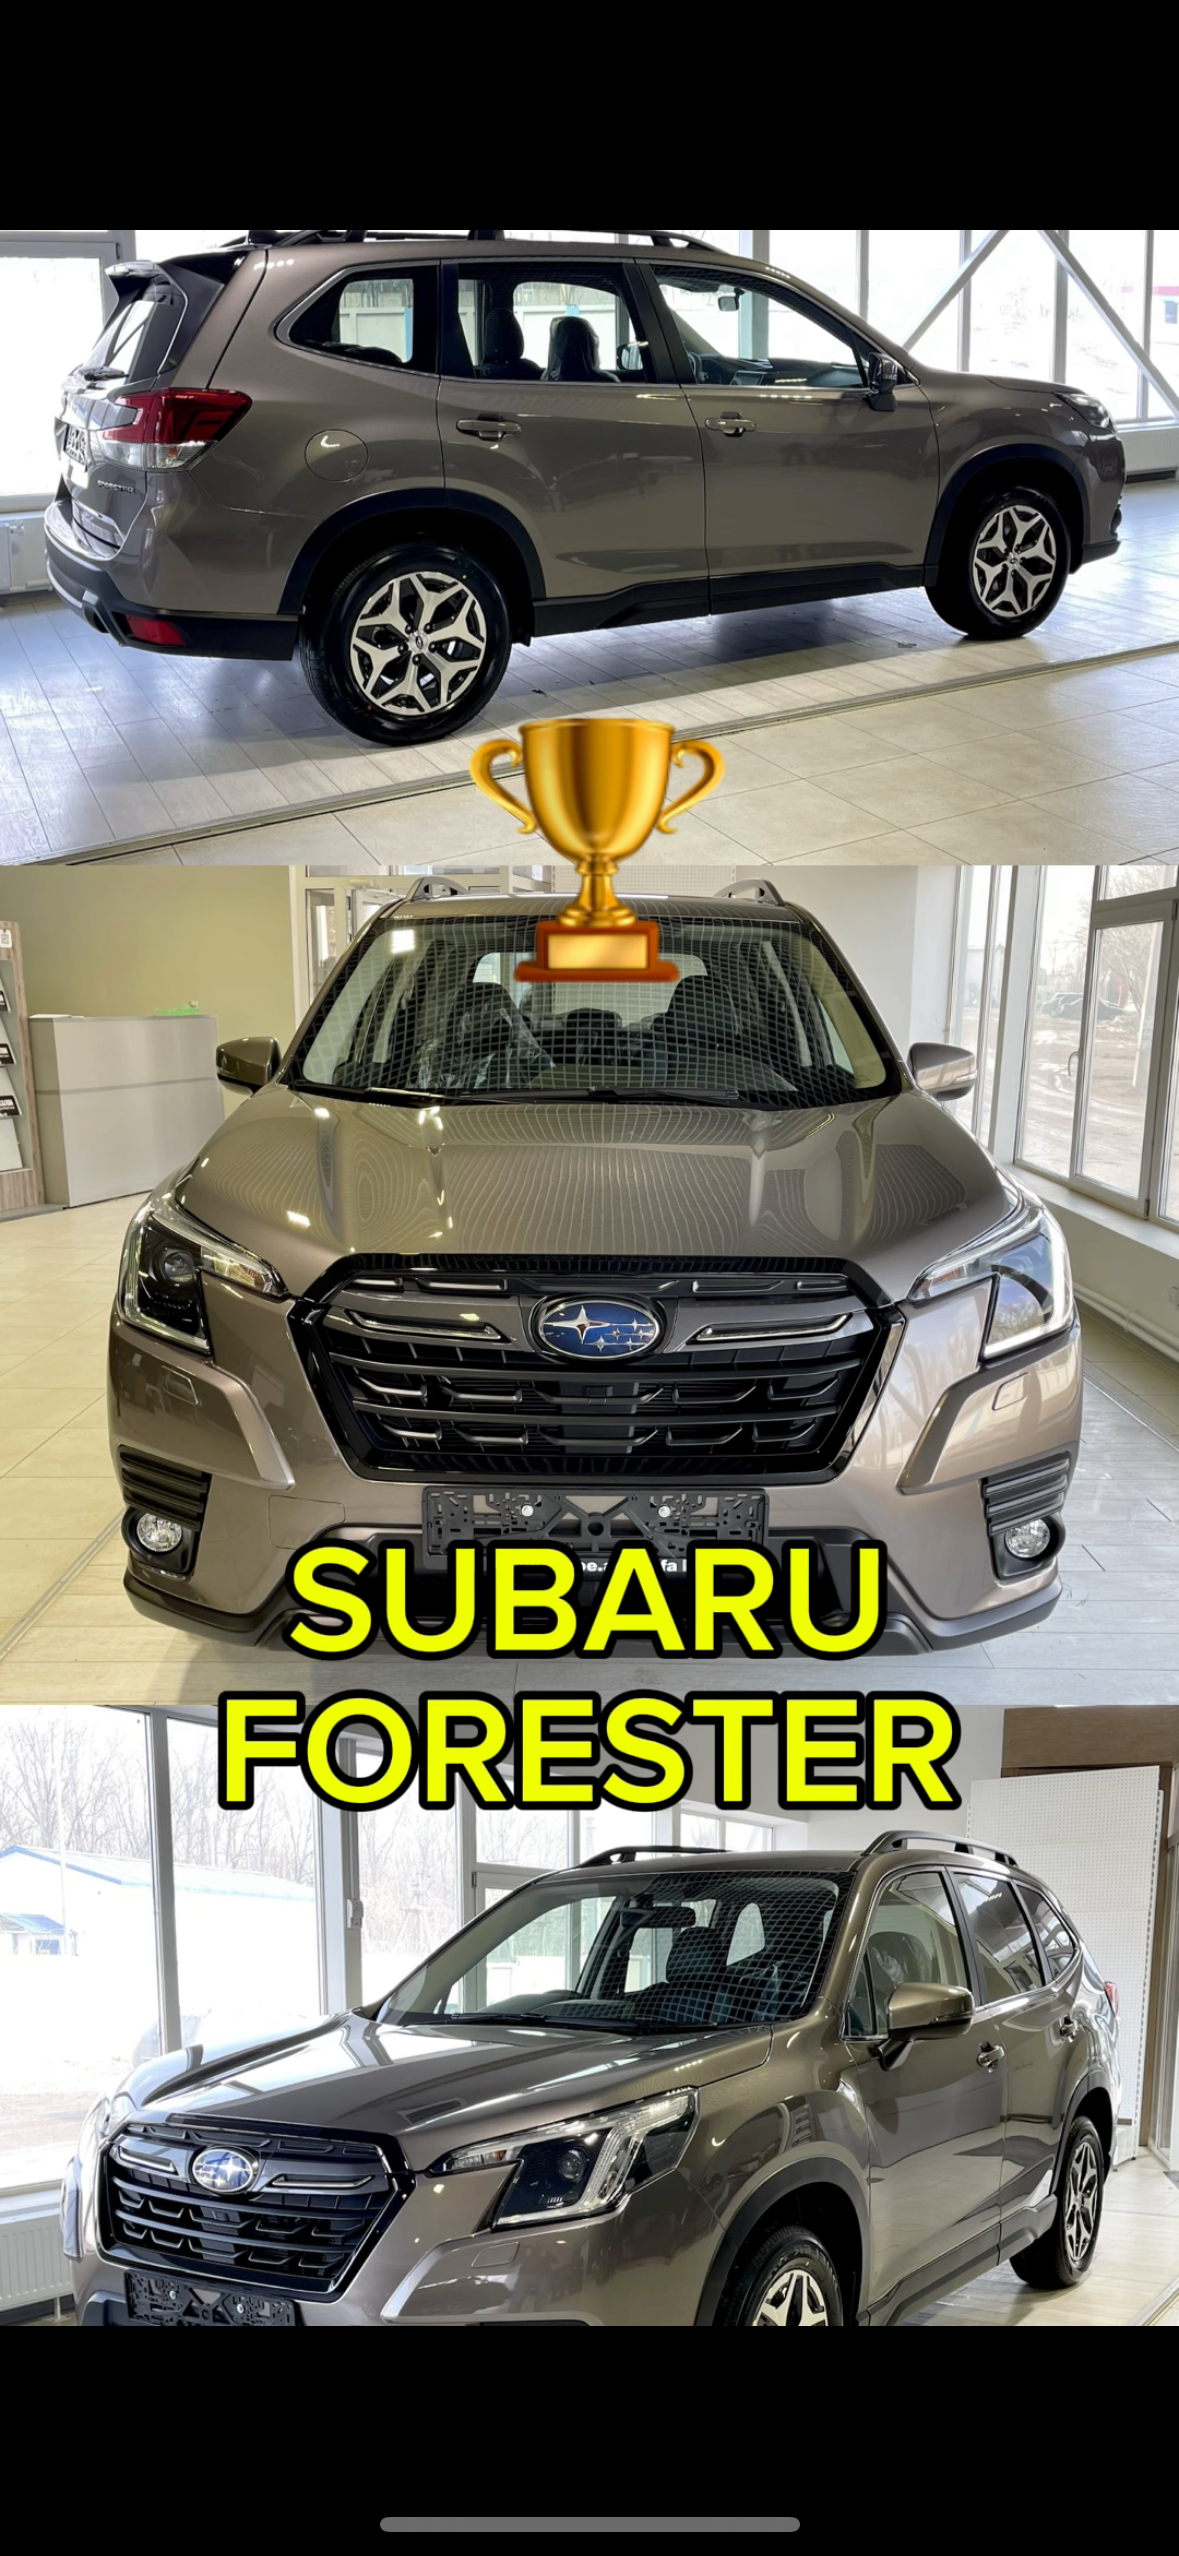 Subaru Forester признали самым надежным новым автомобилем в России. #subaru #subaruforester